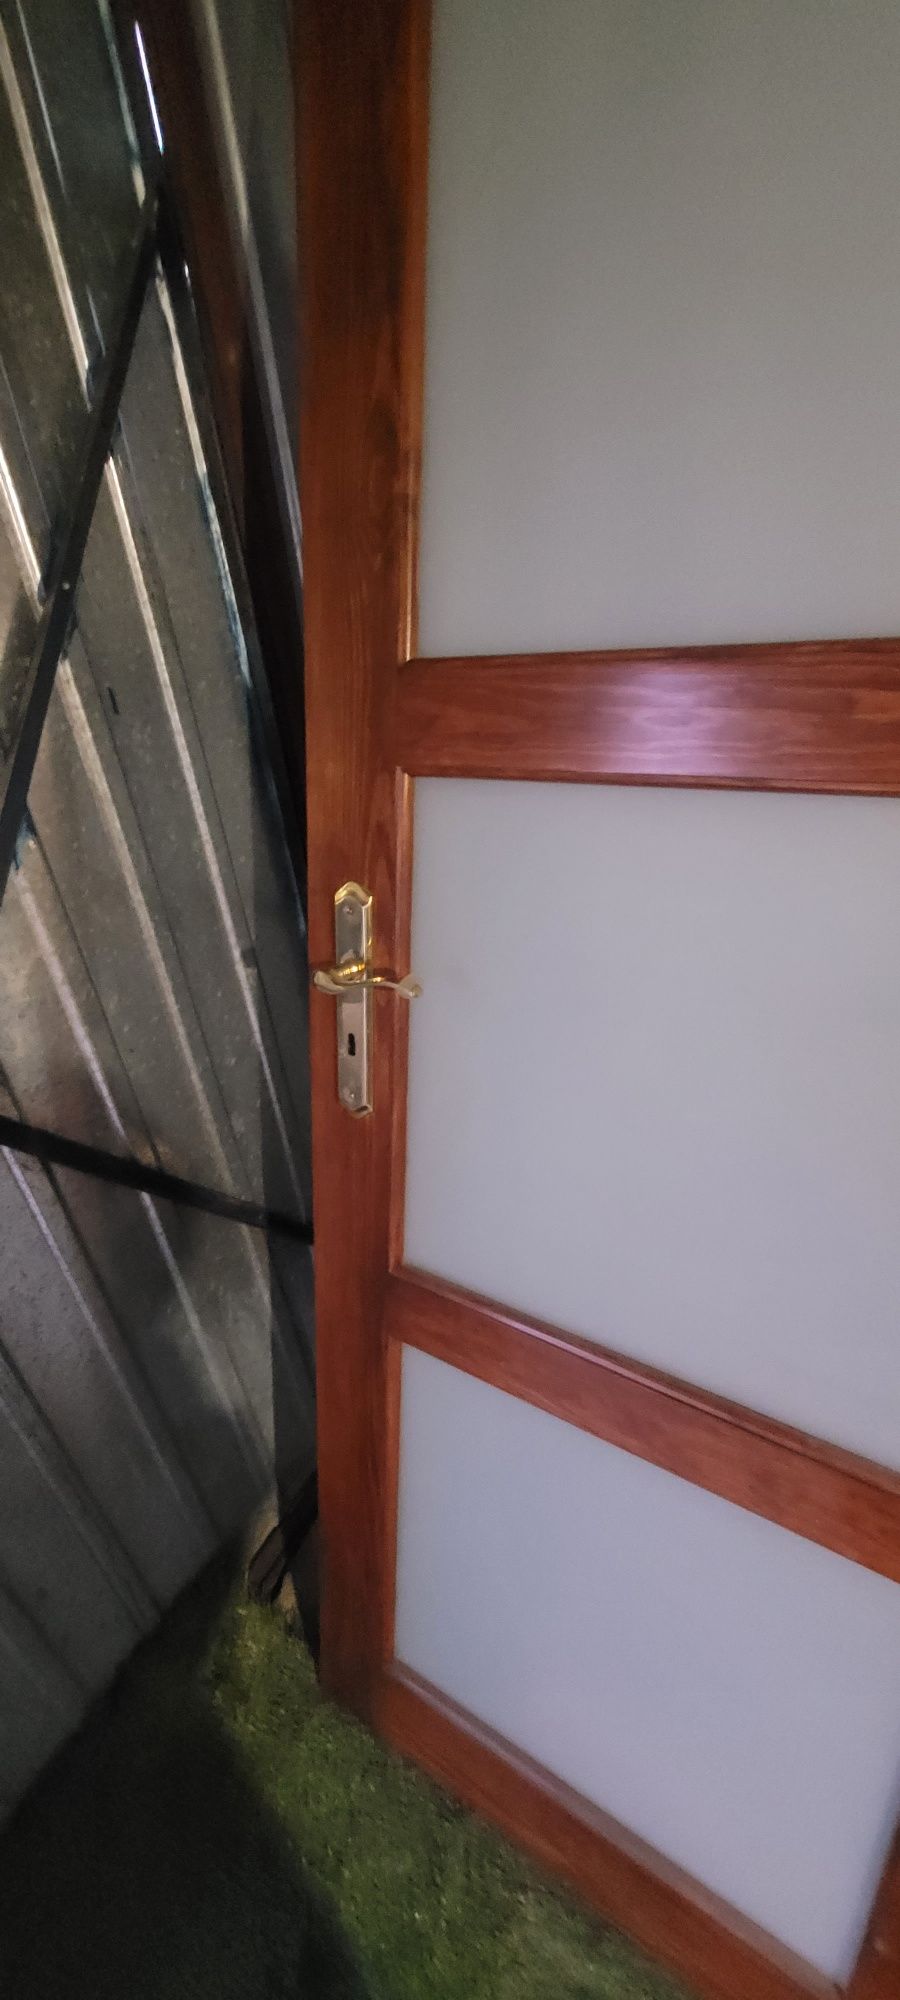 Drzwi drewniane komplet x2 plus ościeżnice